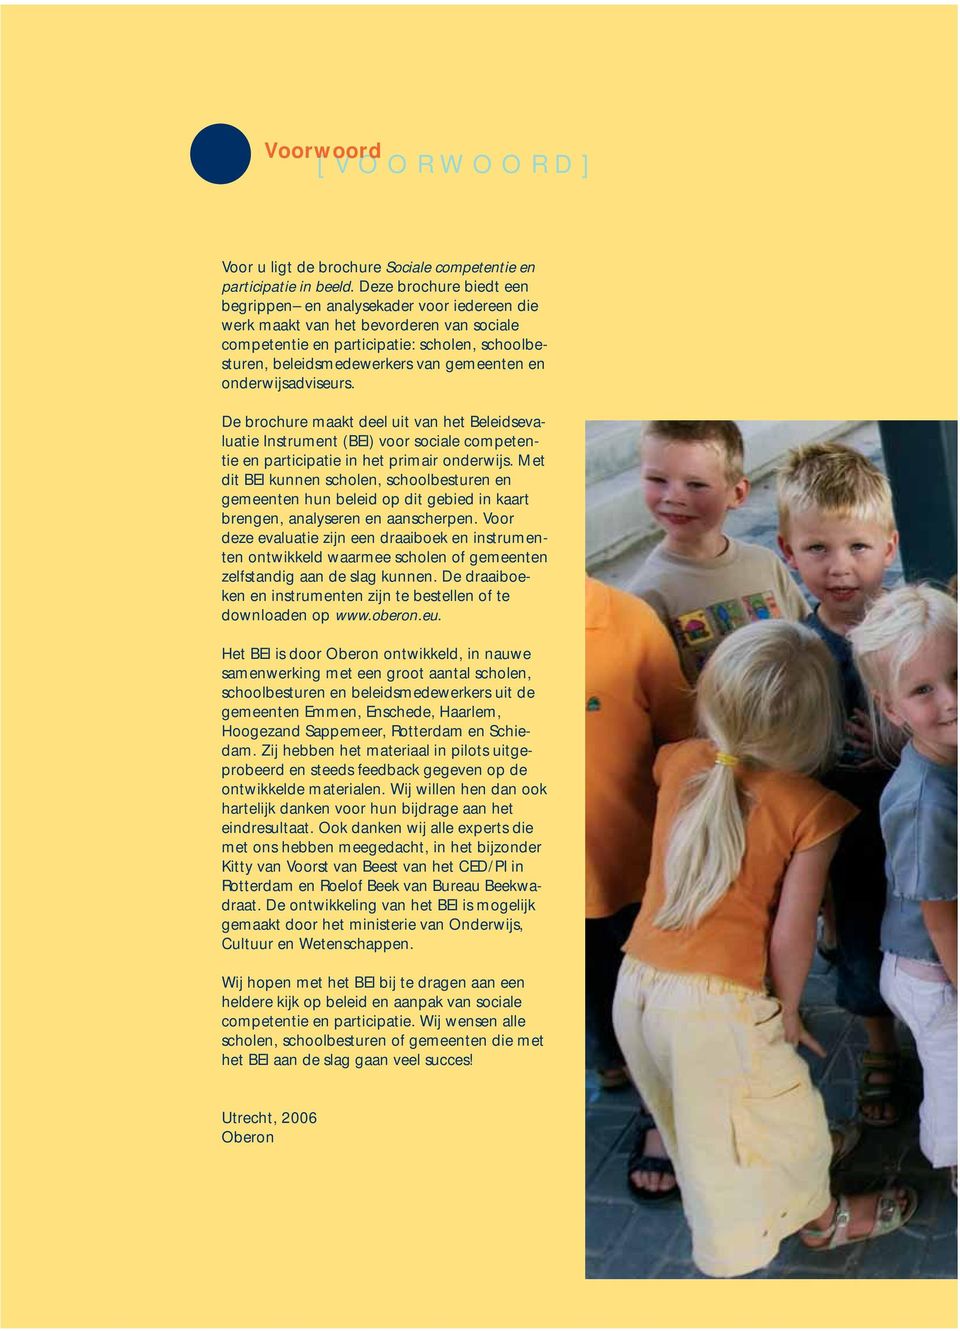 onderwijsadviseurs. De brochure maakt deel uit van het Beleidsevaluatie Instrument (BEI) voor sociale competentie en participatie in het primair onderwijs.